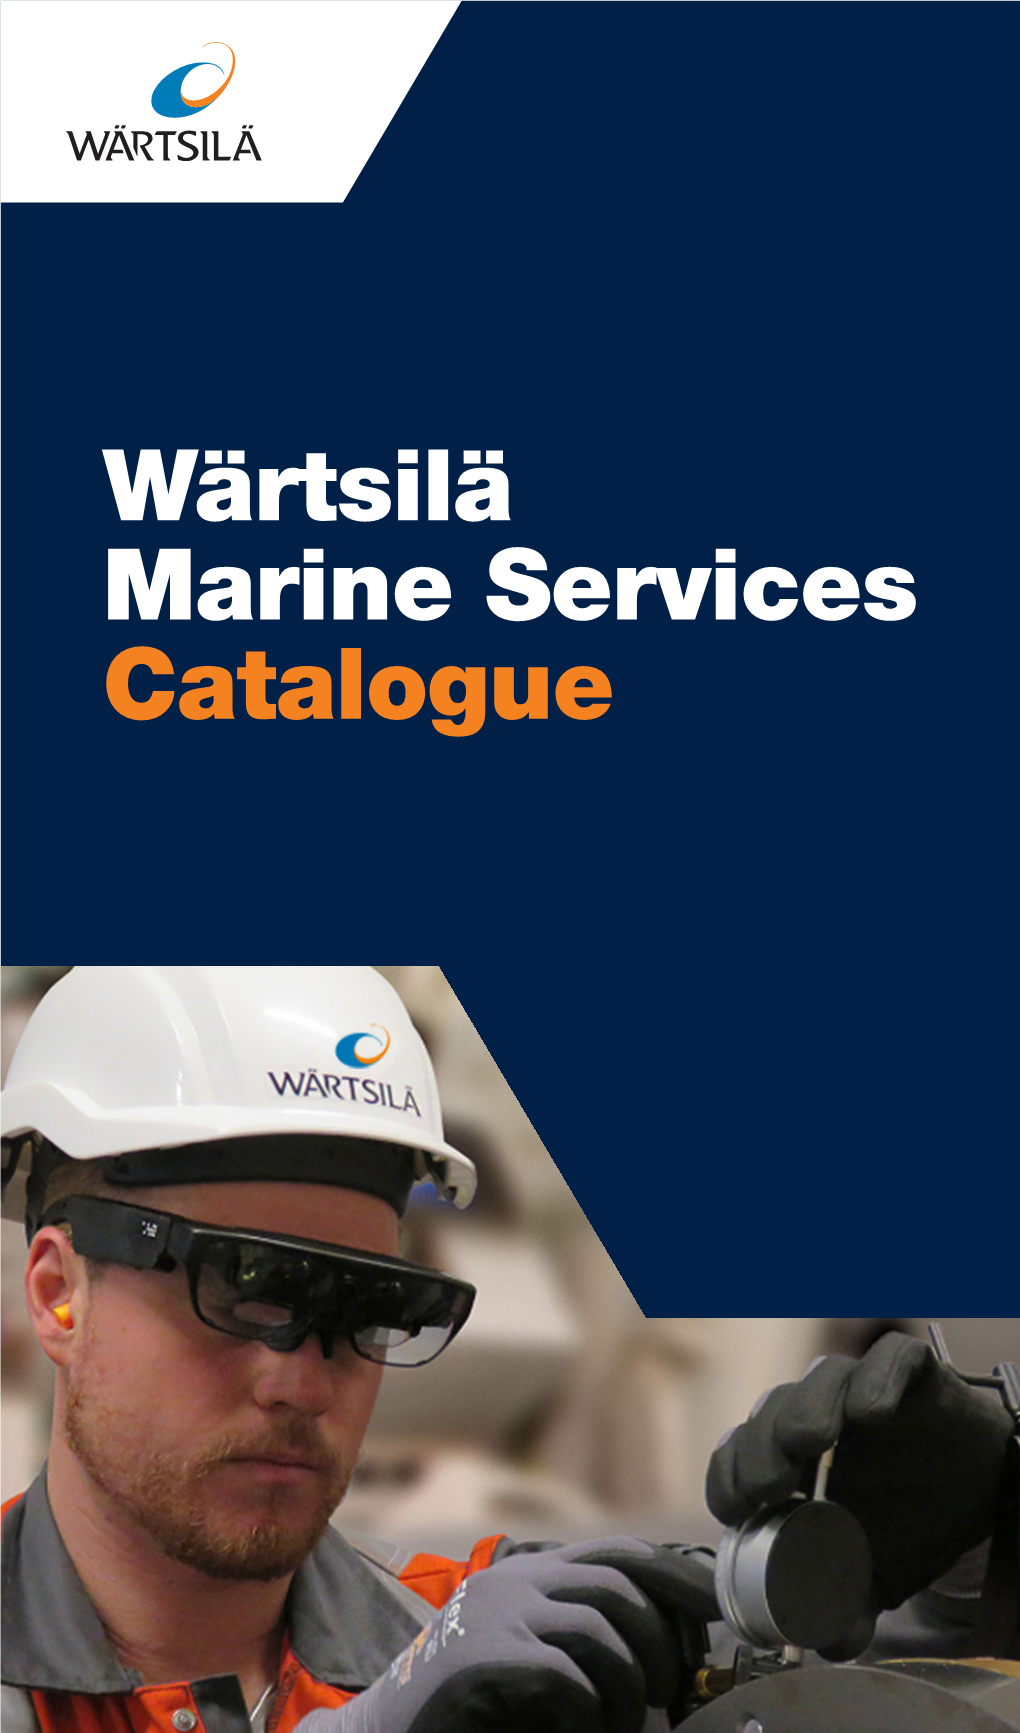 Wärtsilä Marine Services Catalogue Highlighted Services